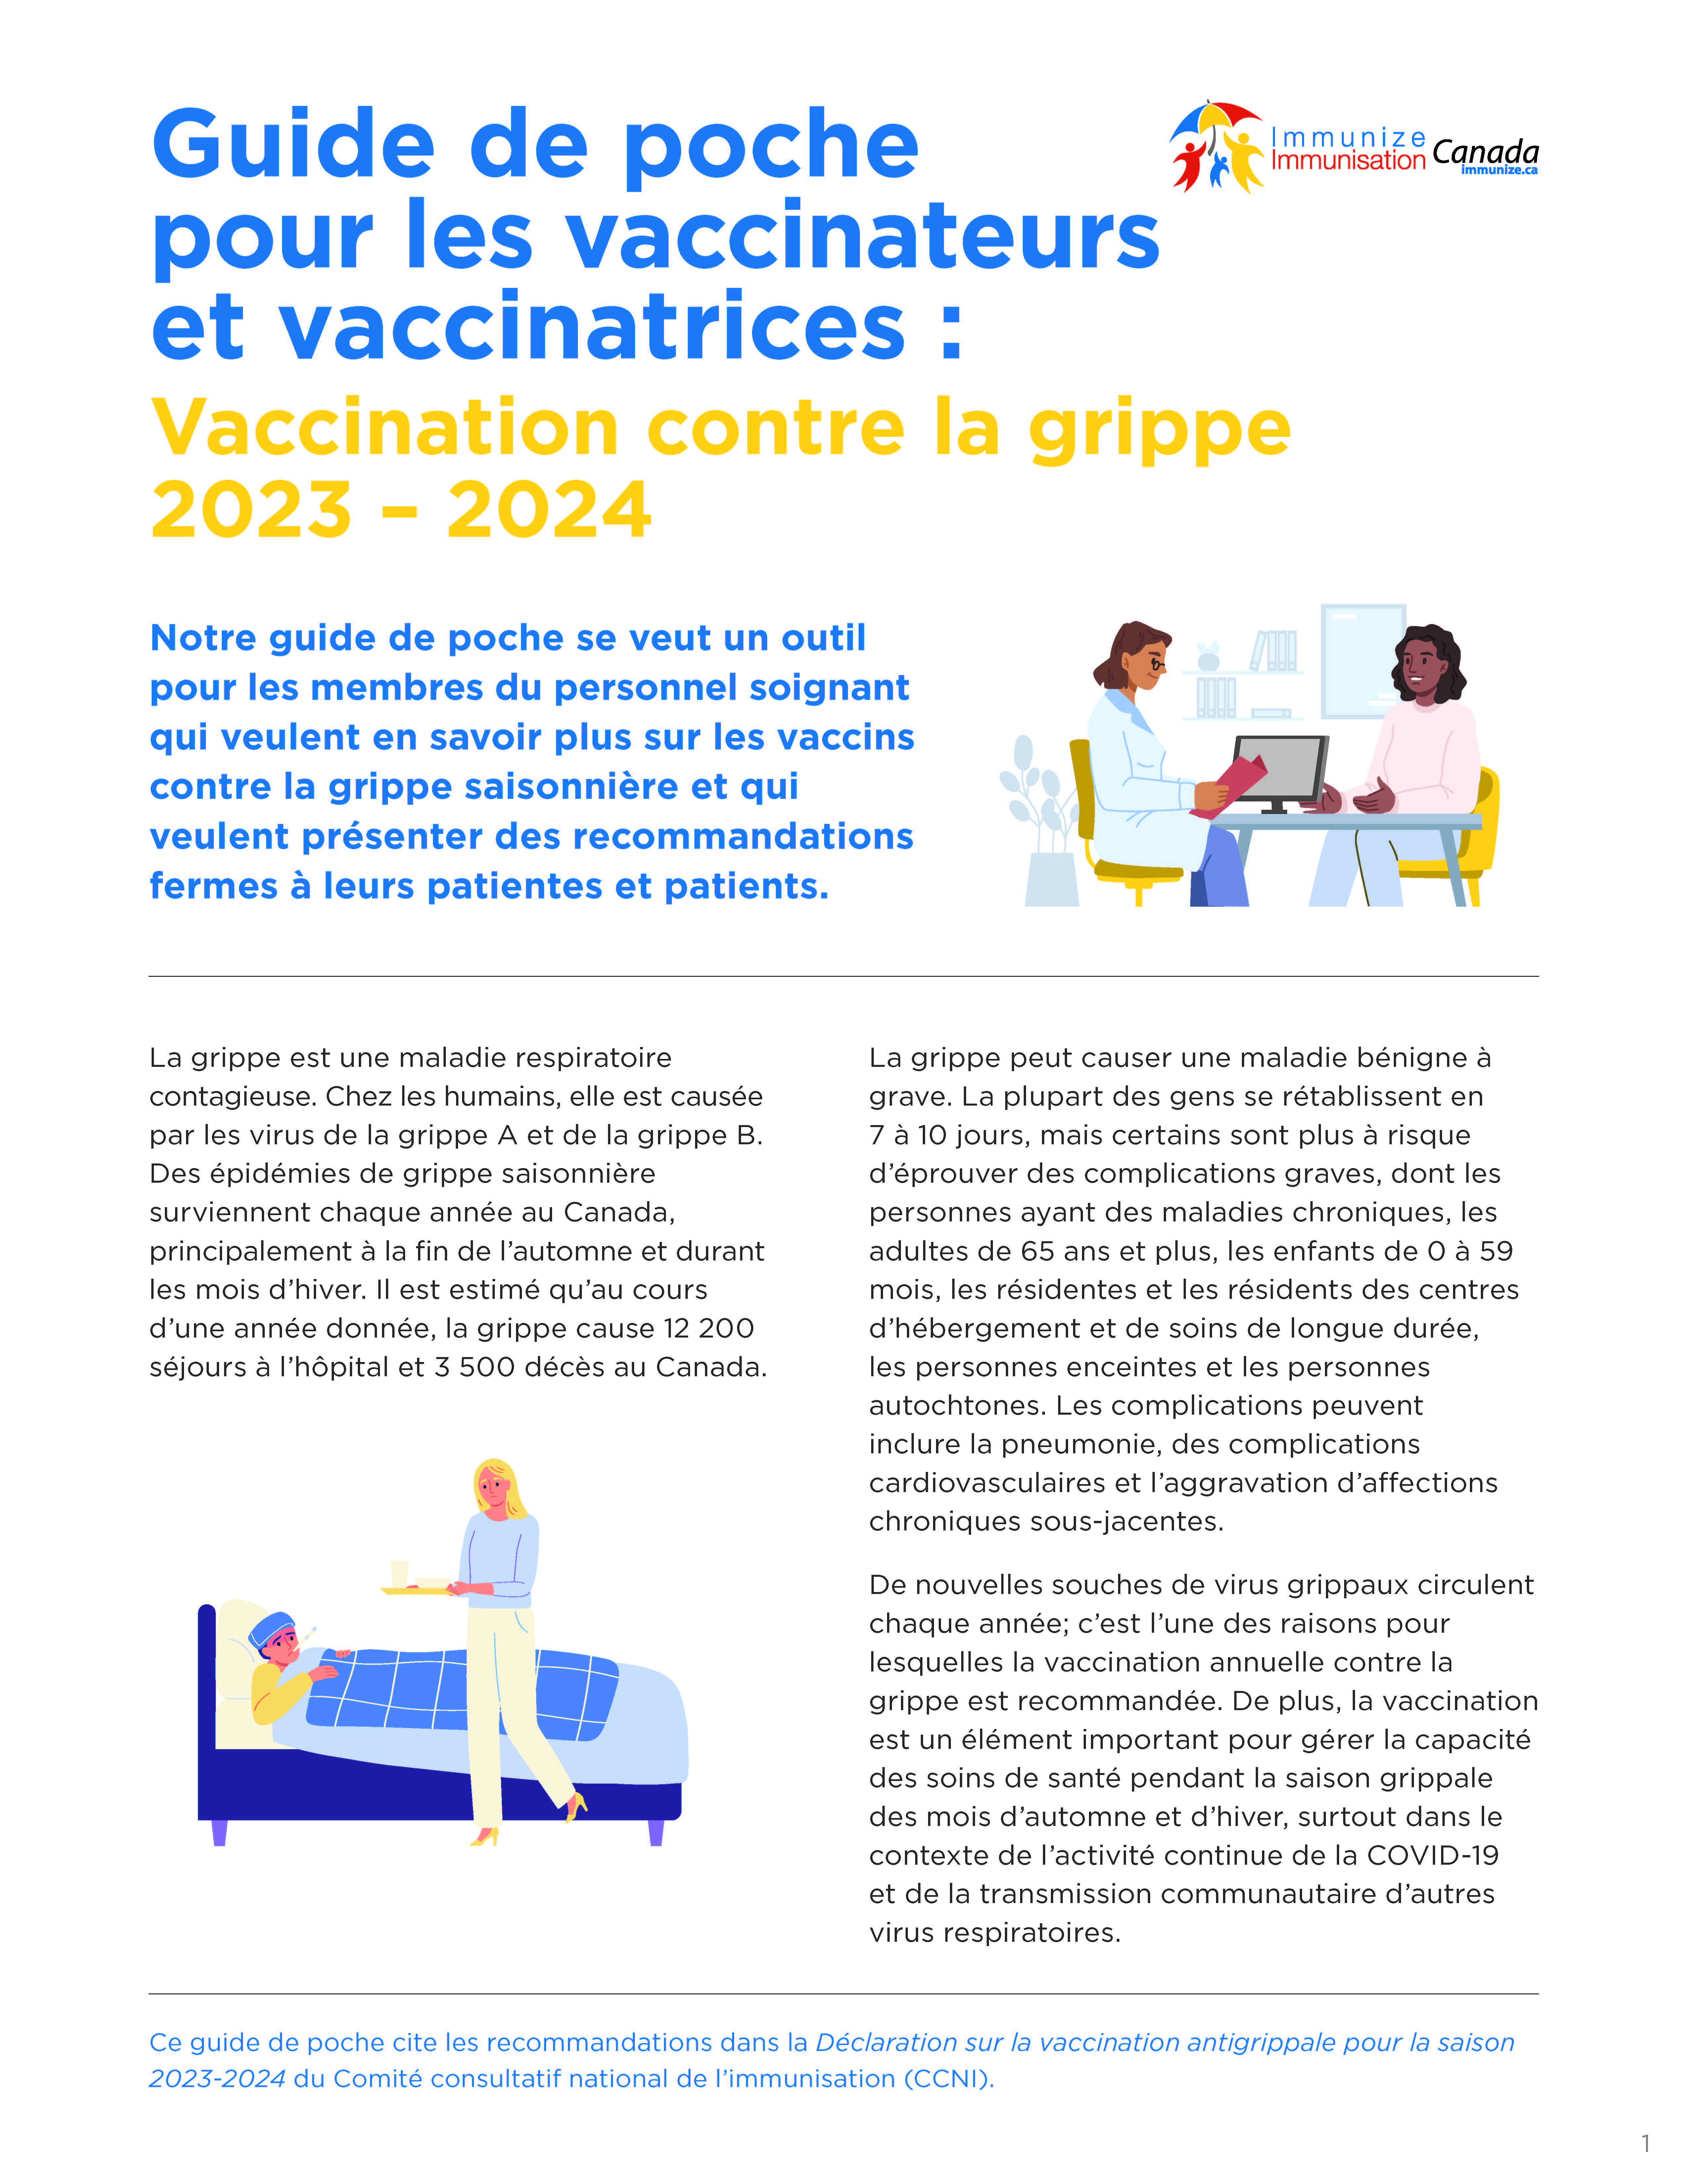 Guide de poche pour les vaccinateurs et vaccinatrices : Vaccination contre la grippe 2023-2024